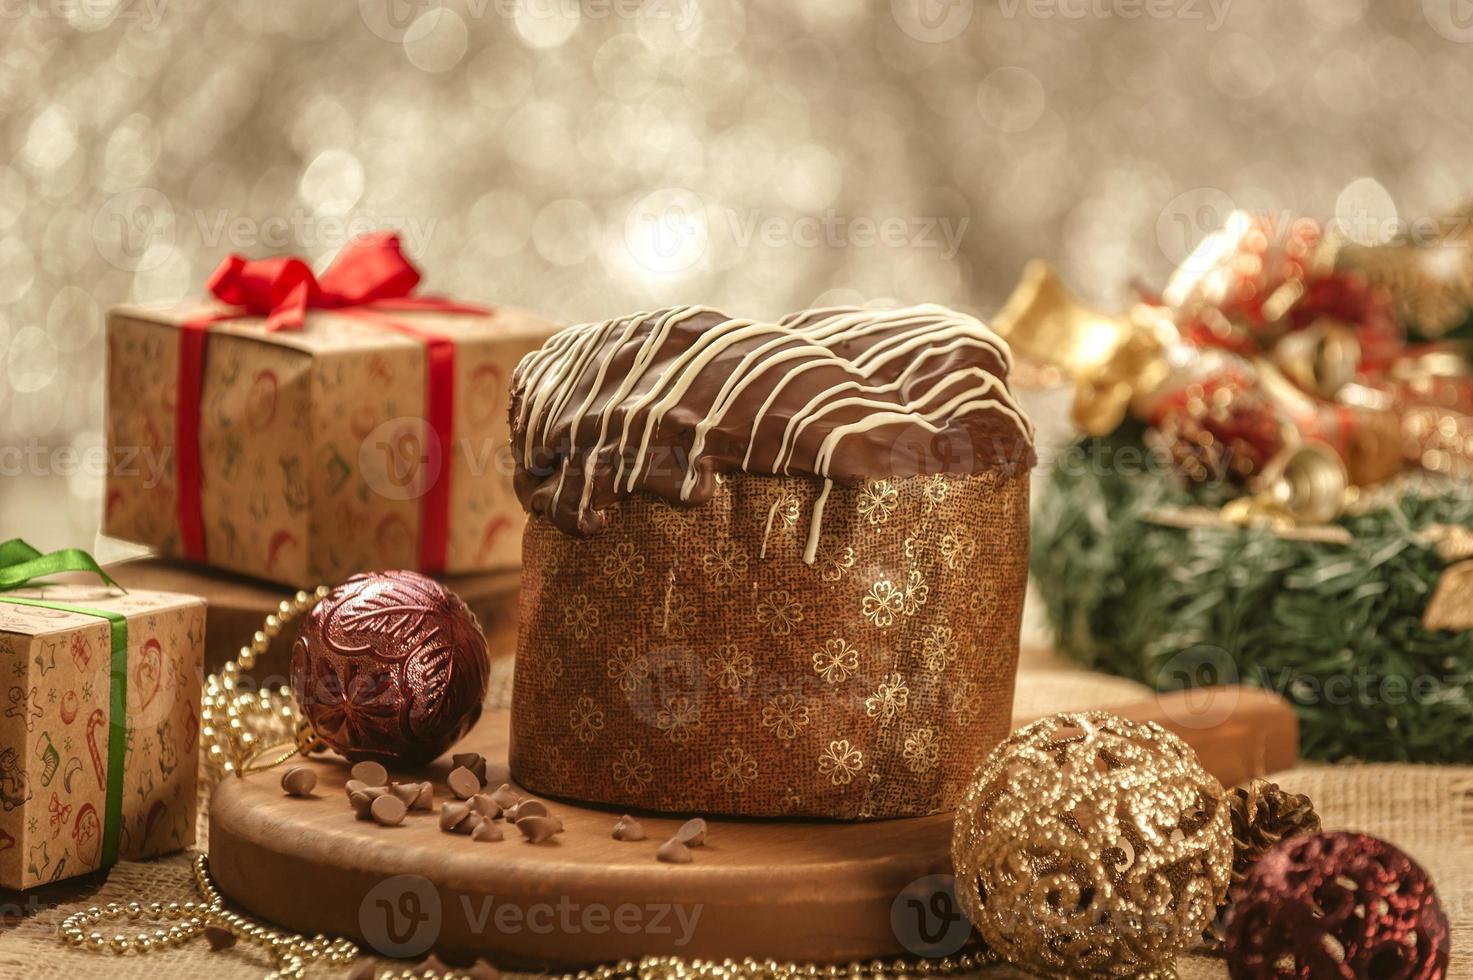 panetone de chocolate na mesa de madeira com enfeites de natal foto